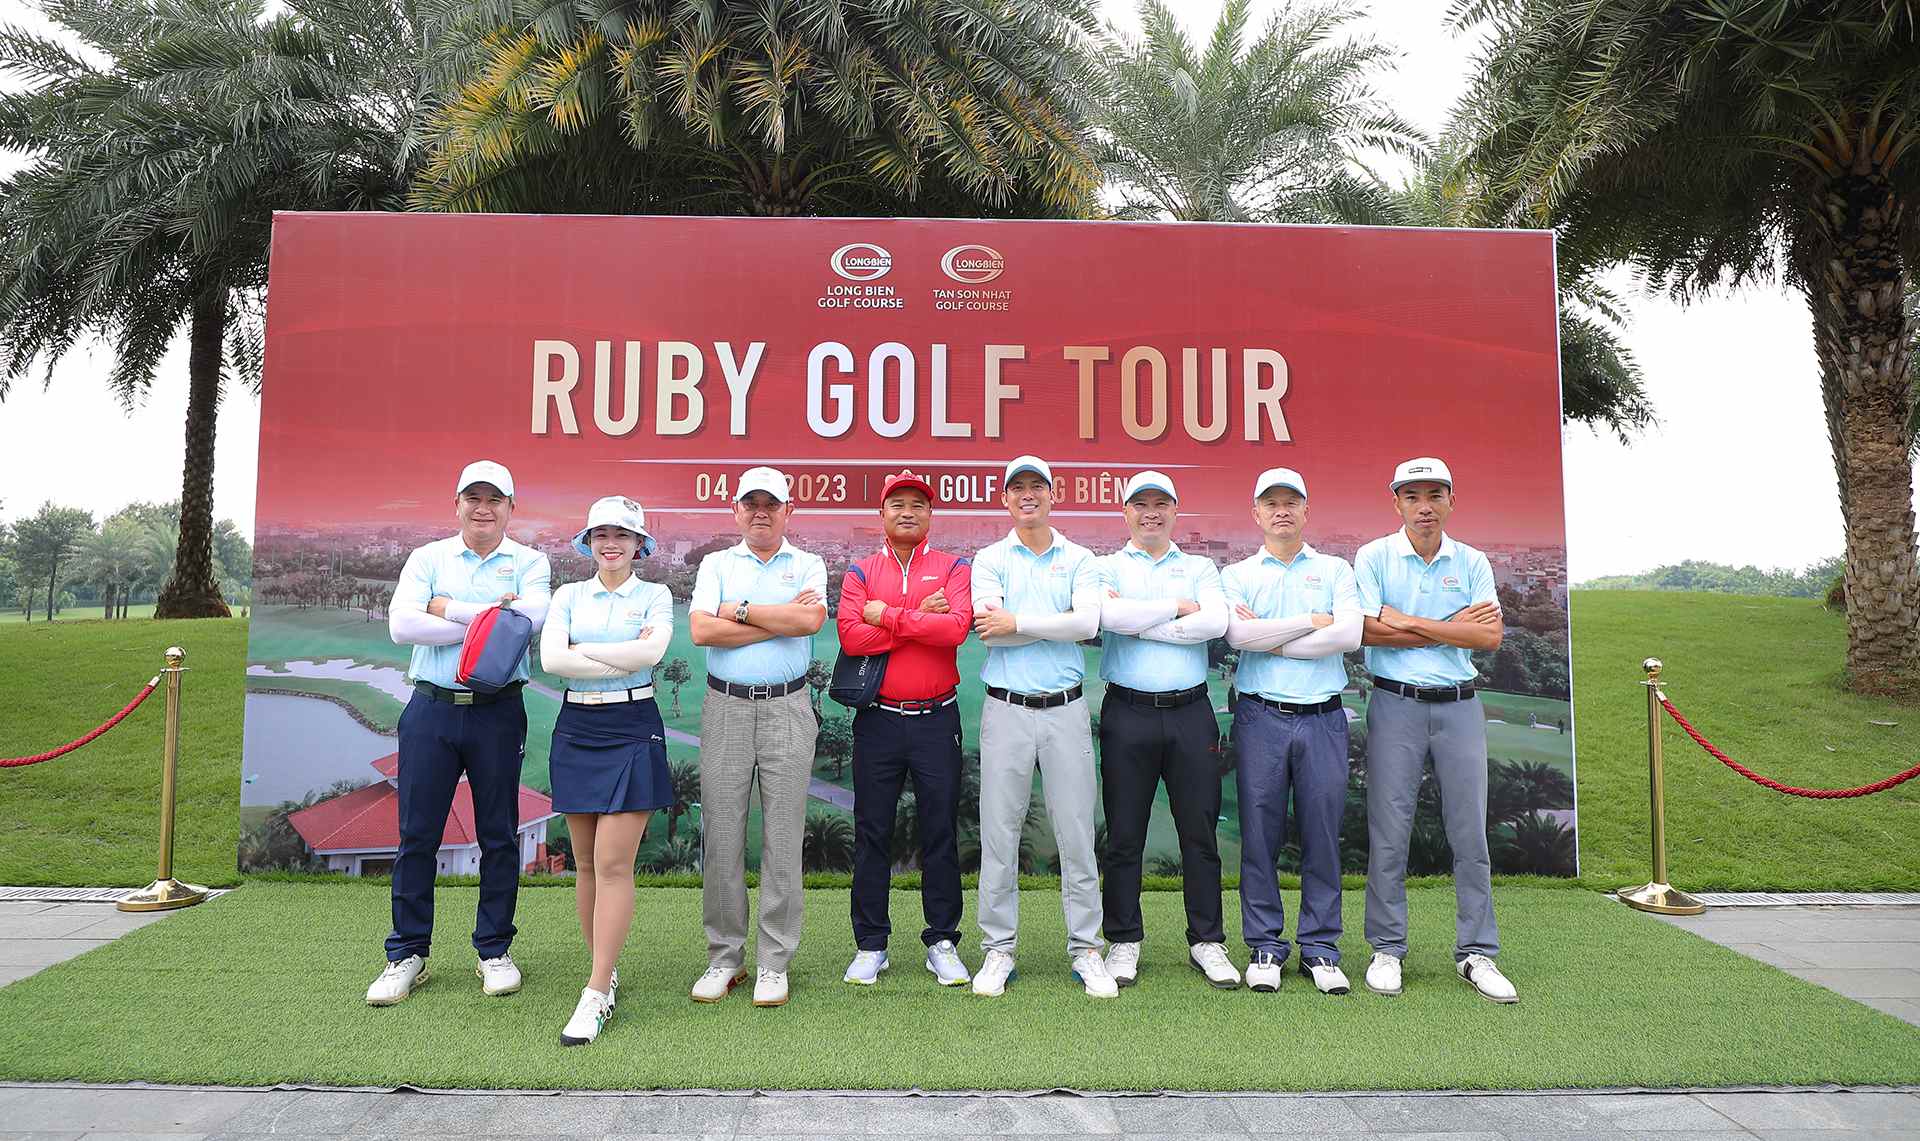 Ruby Golf Tour 2023 - ChÆ°Æ¡ng trÃ¬nh tri Ã¢n Quyá»�n lá»£i KhÃ¡ch hÃ ng thÆ°á»�ng niÃªn